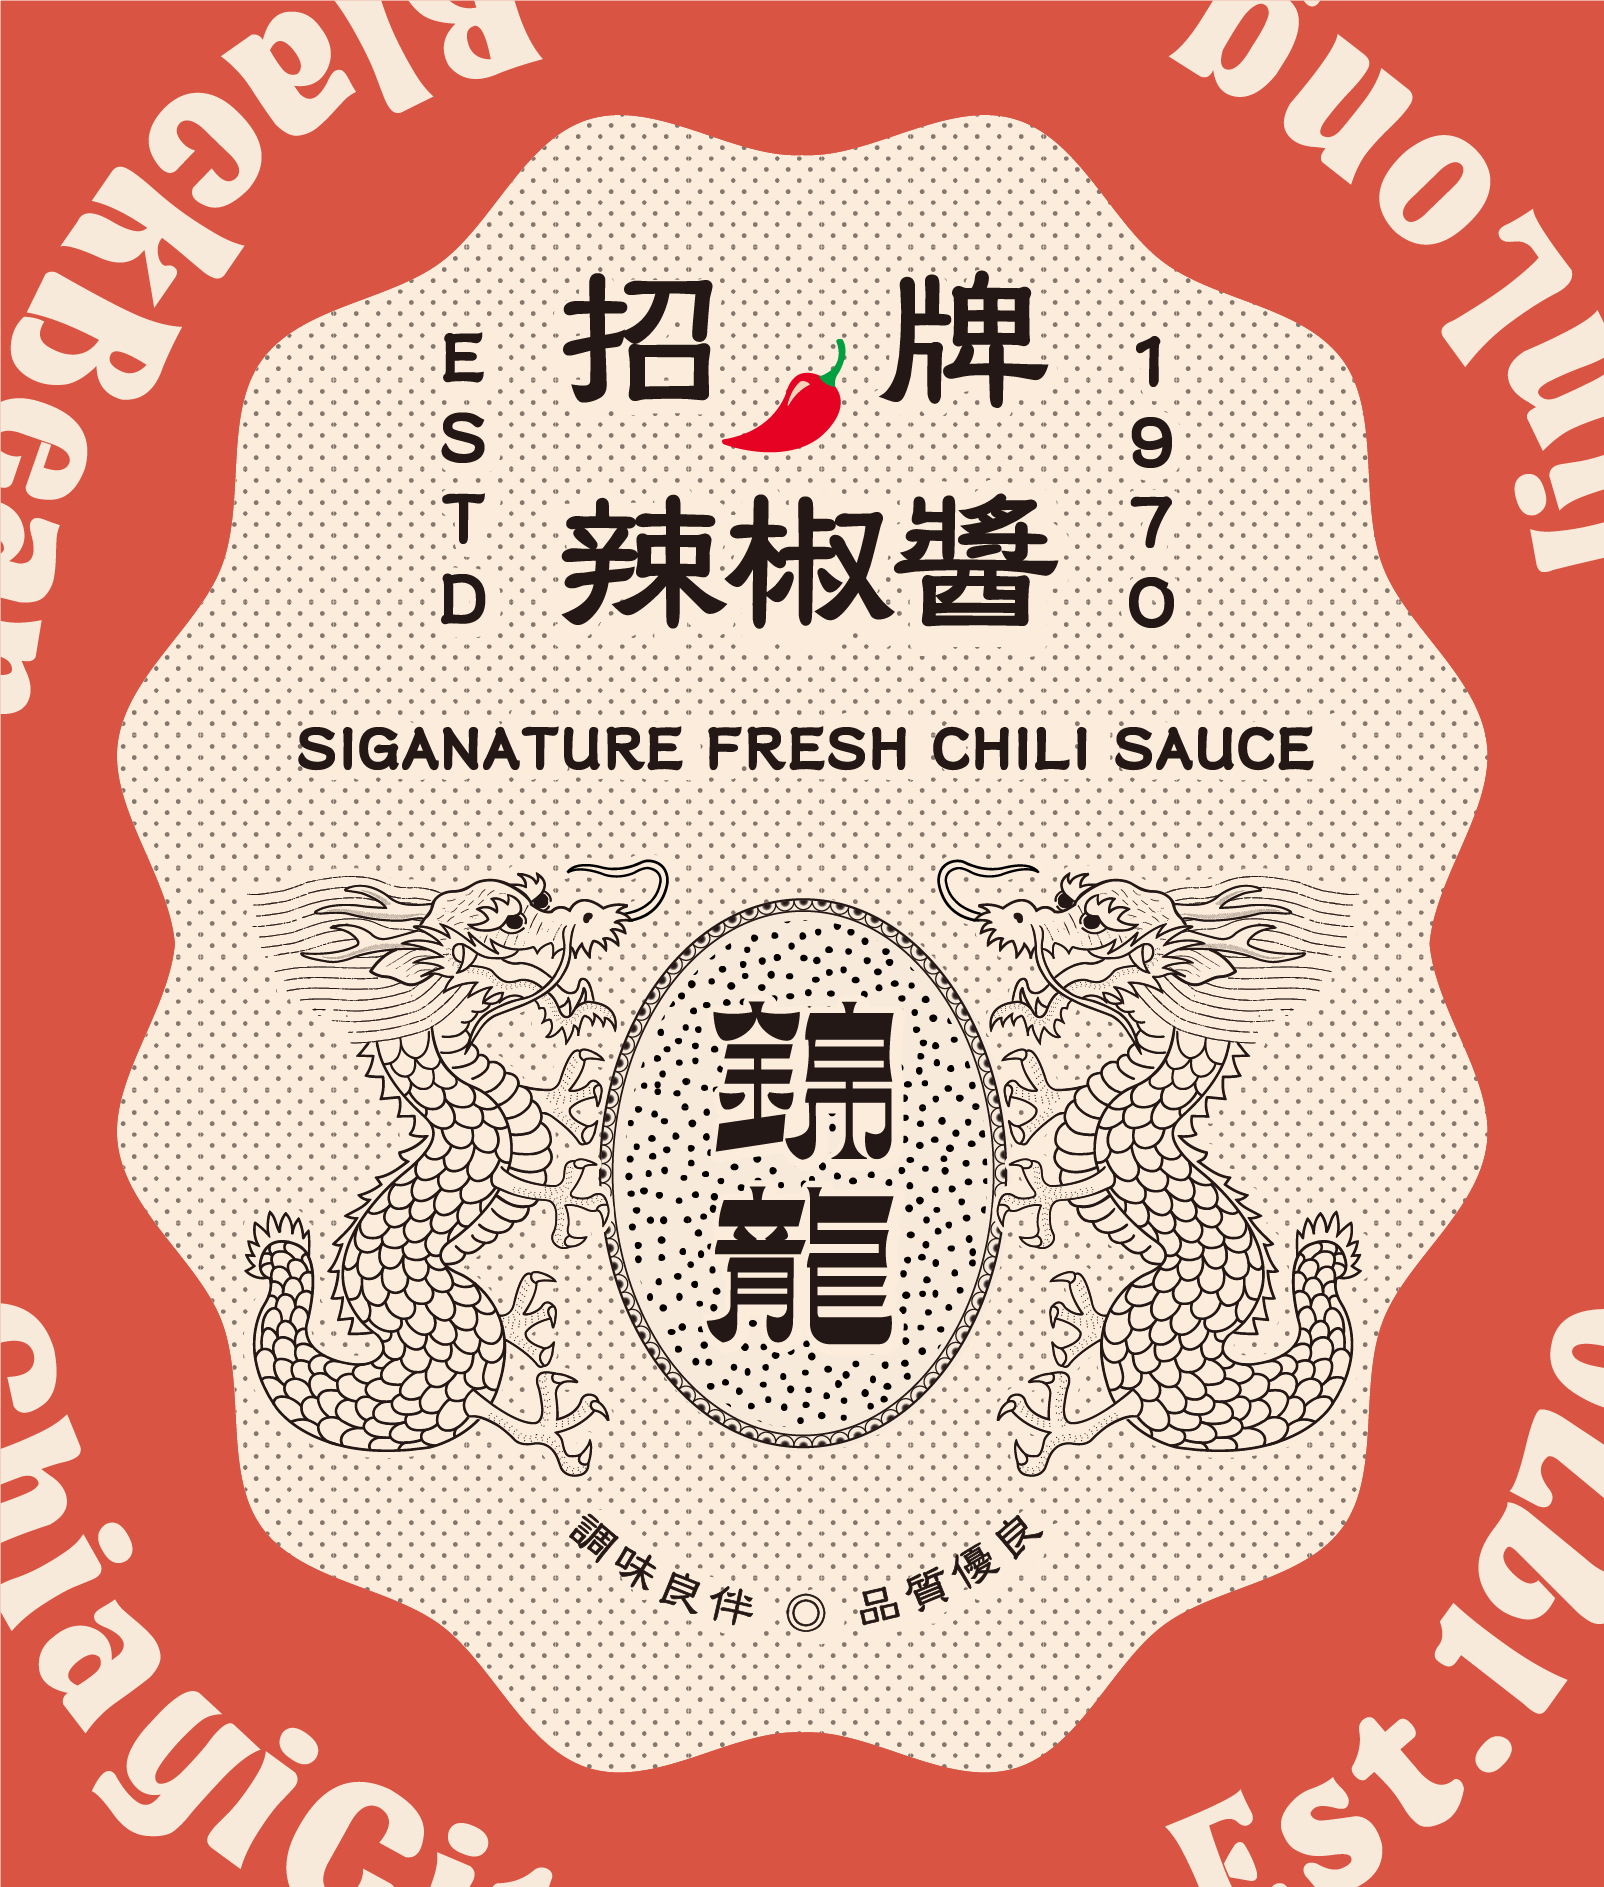 招牌辣椒醬-Signature Fresh Chili Sauce